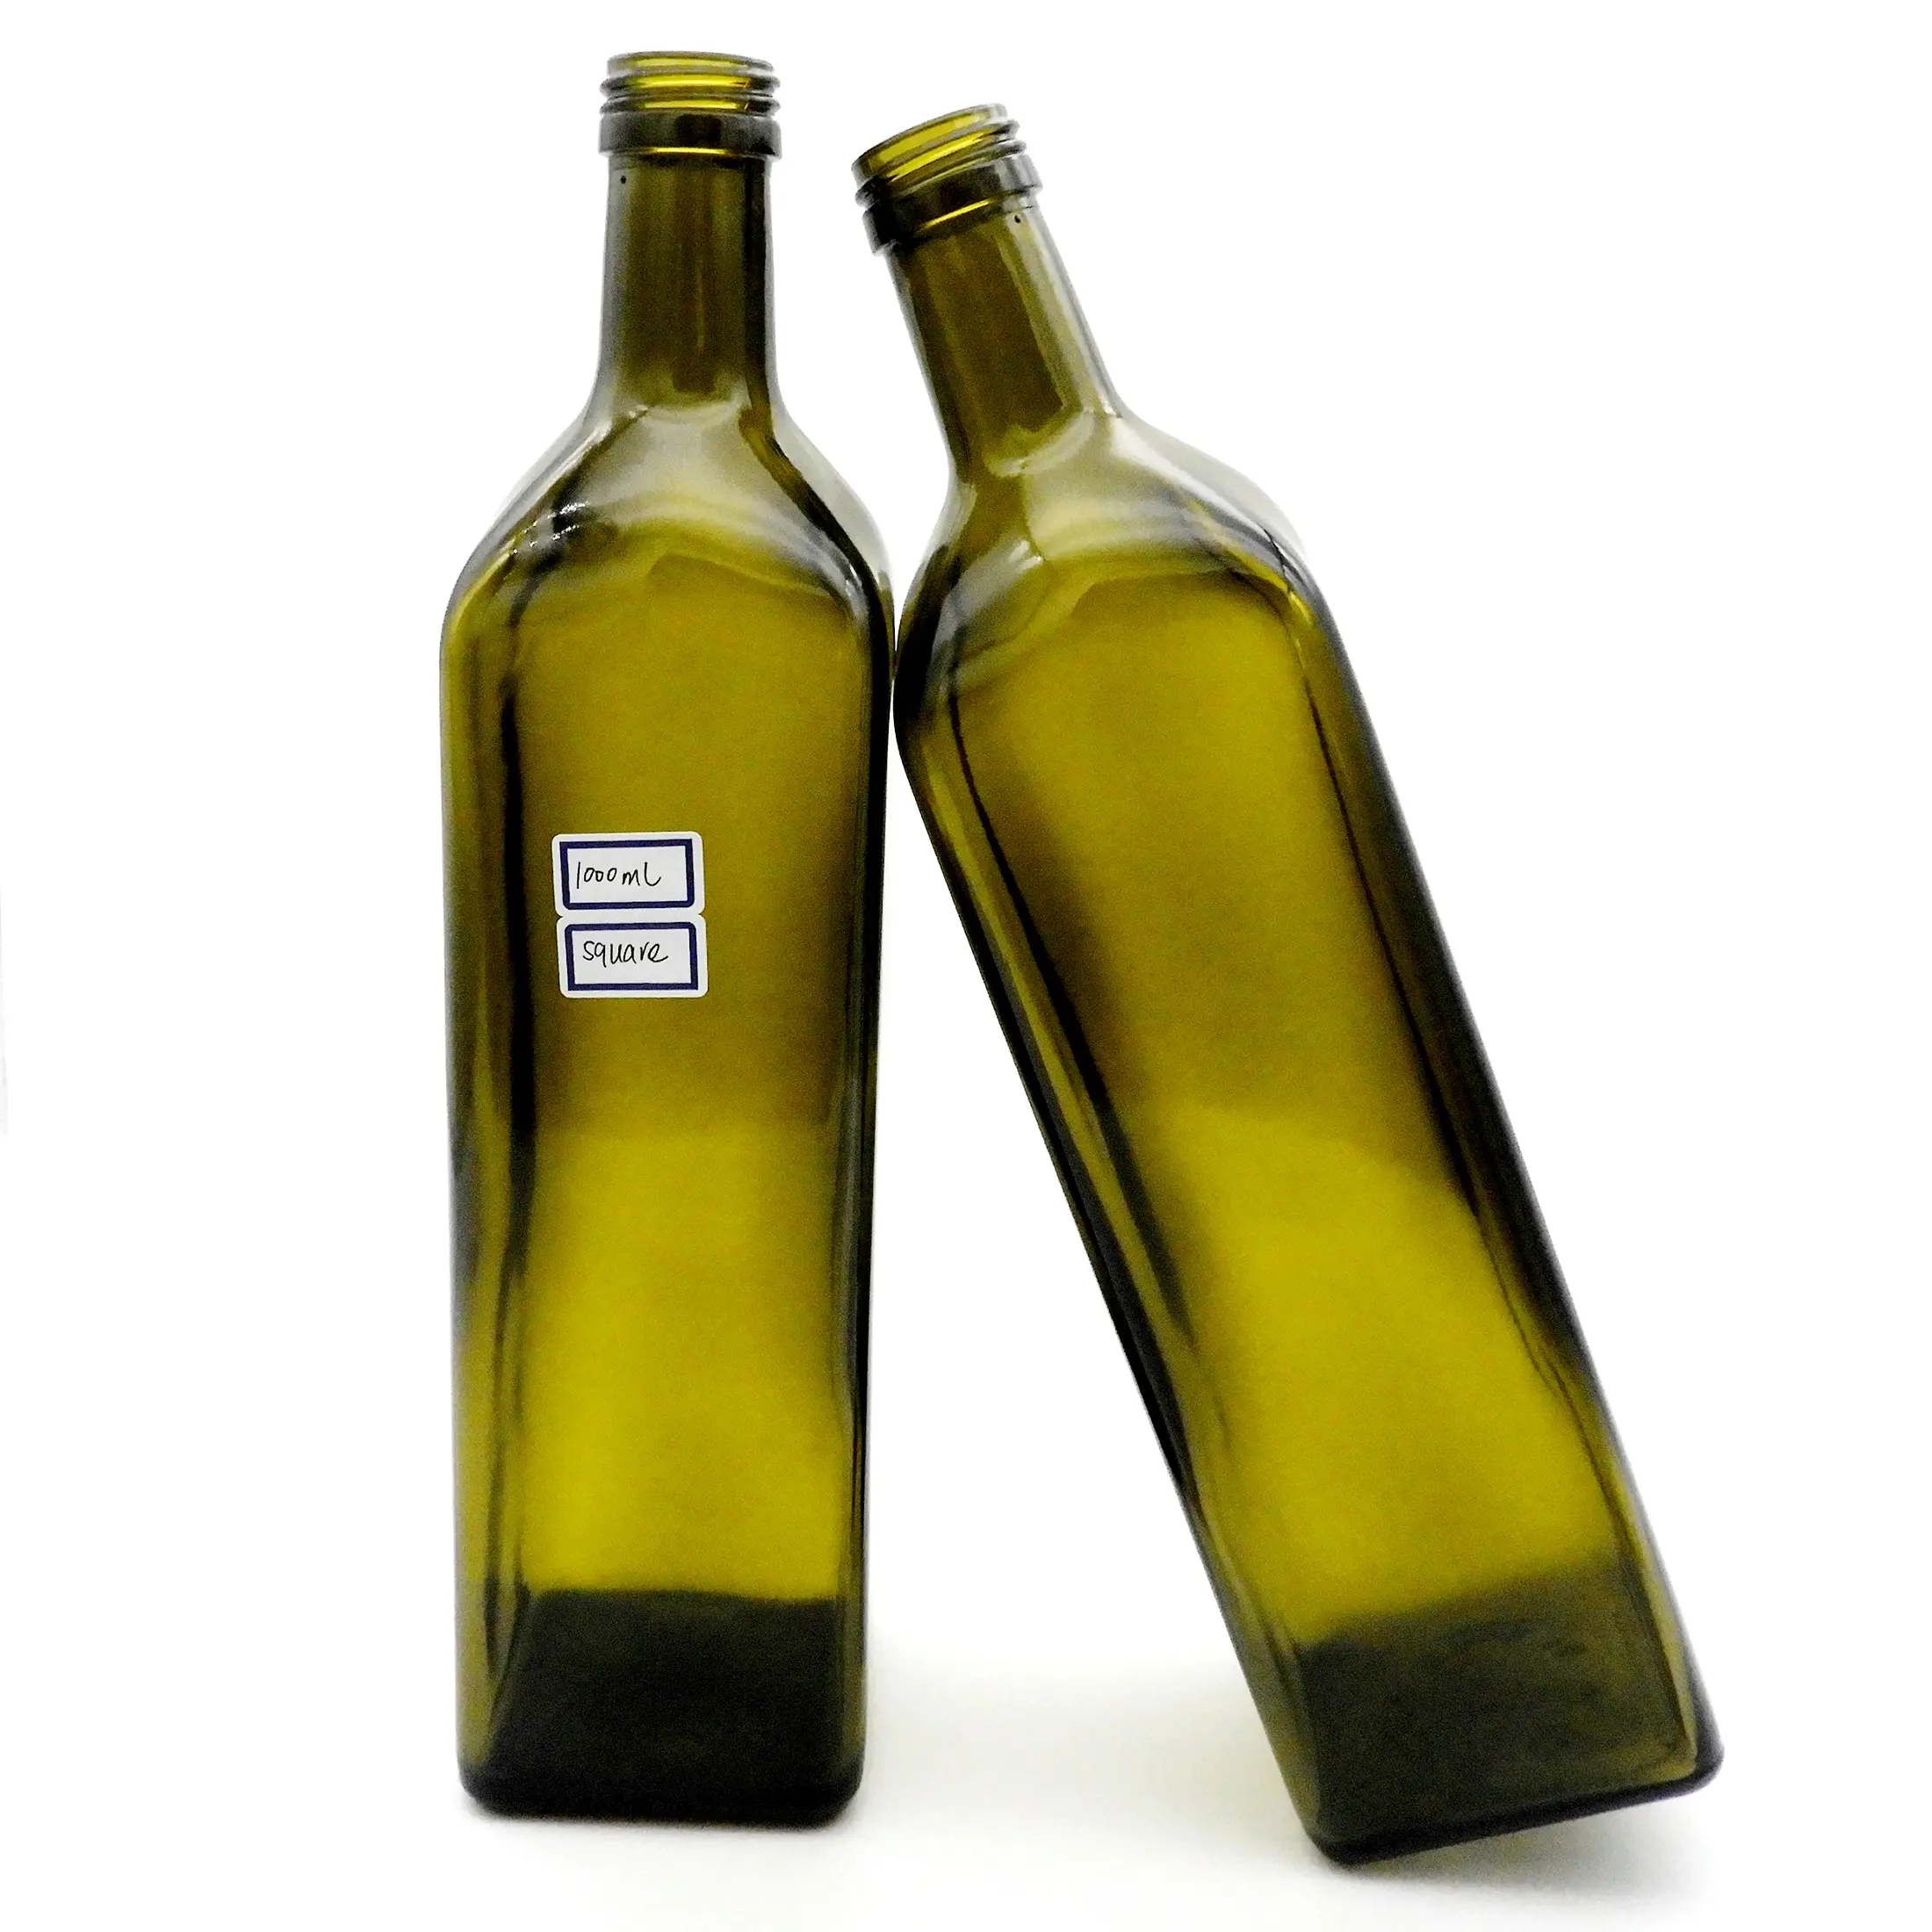 1000ml cam zeytinyağı şişesi üretici 1 litre Marasca zeytinyağı şişesi toptan